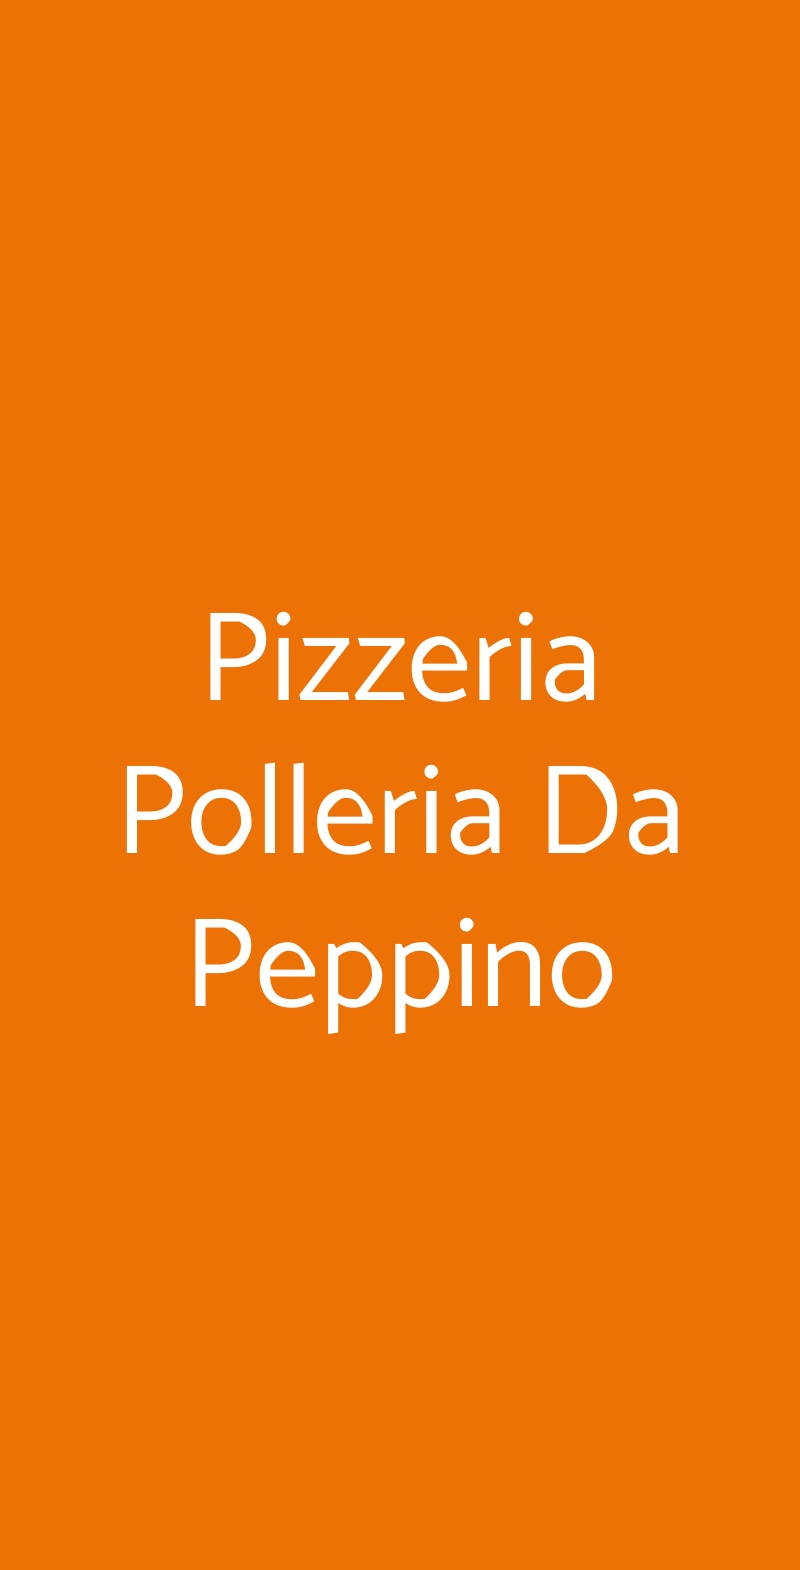 Pizzeria Polleria Da Peppino Palermo menù 1 pagina